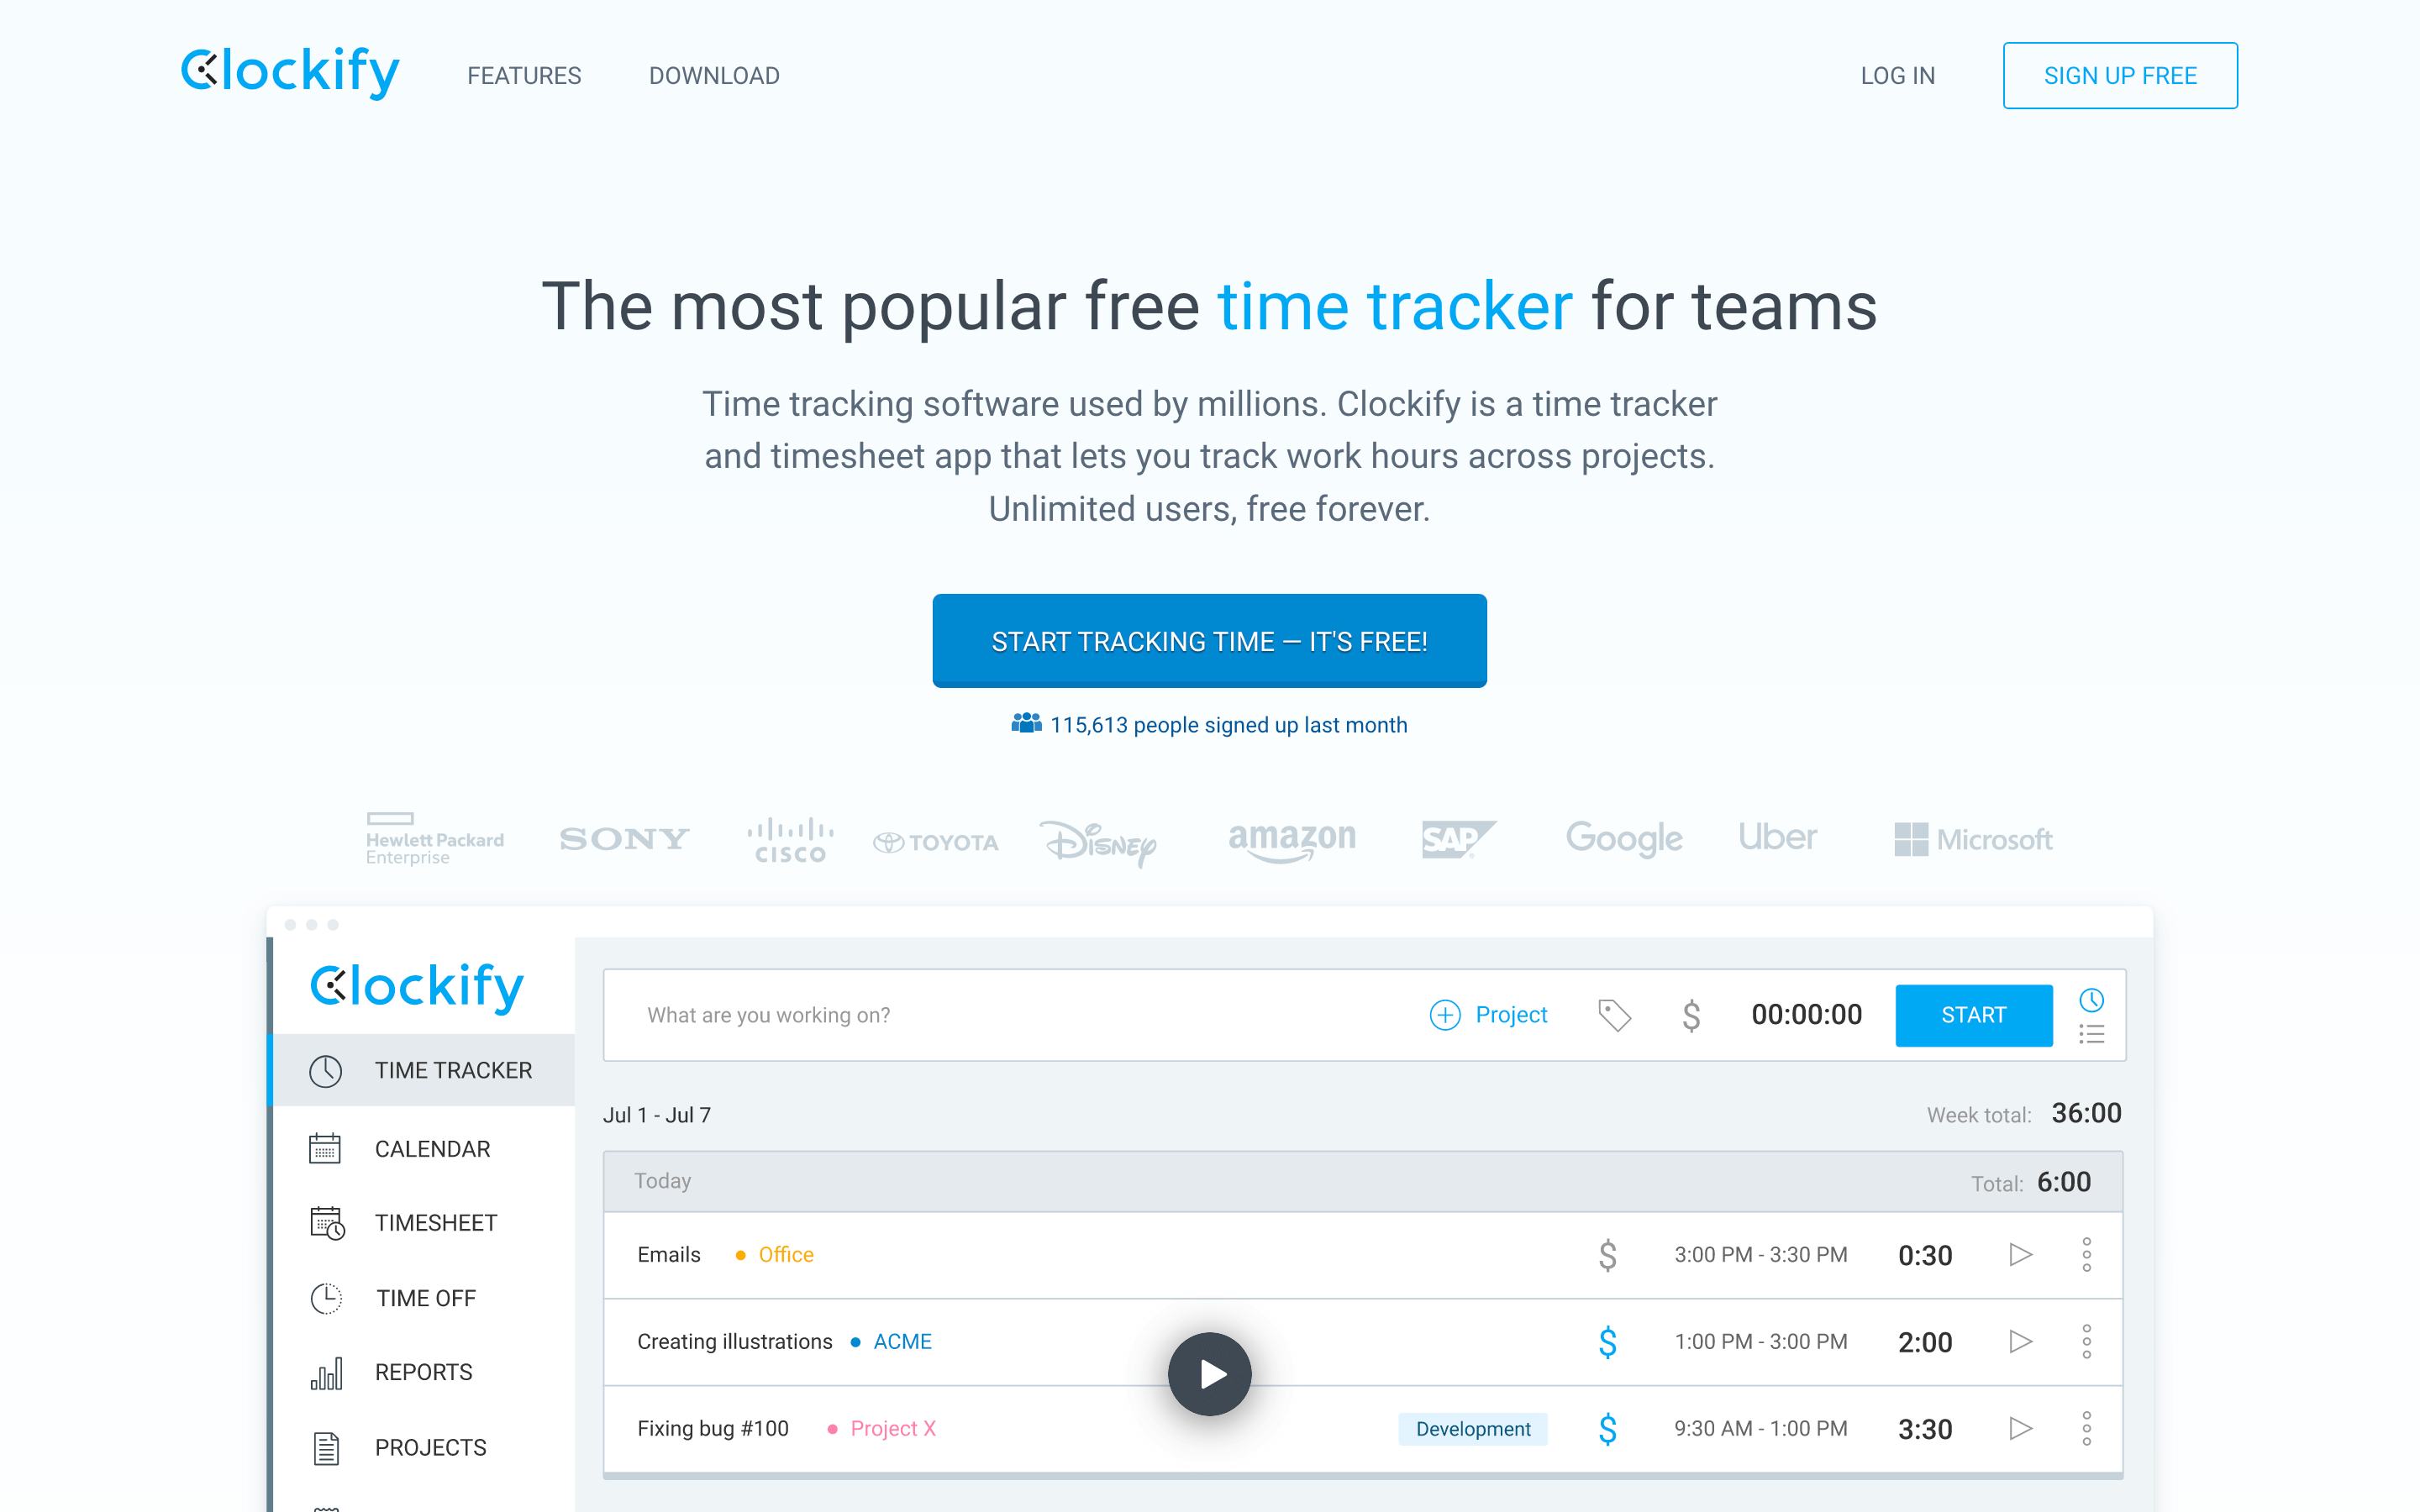 Clockify homepage